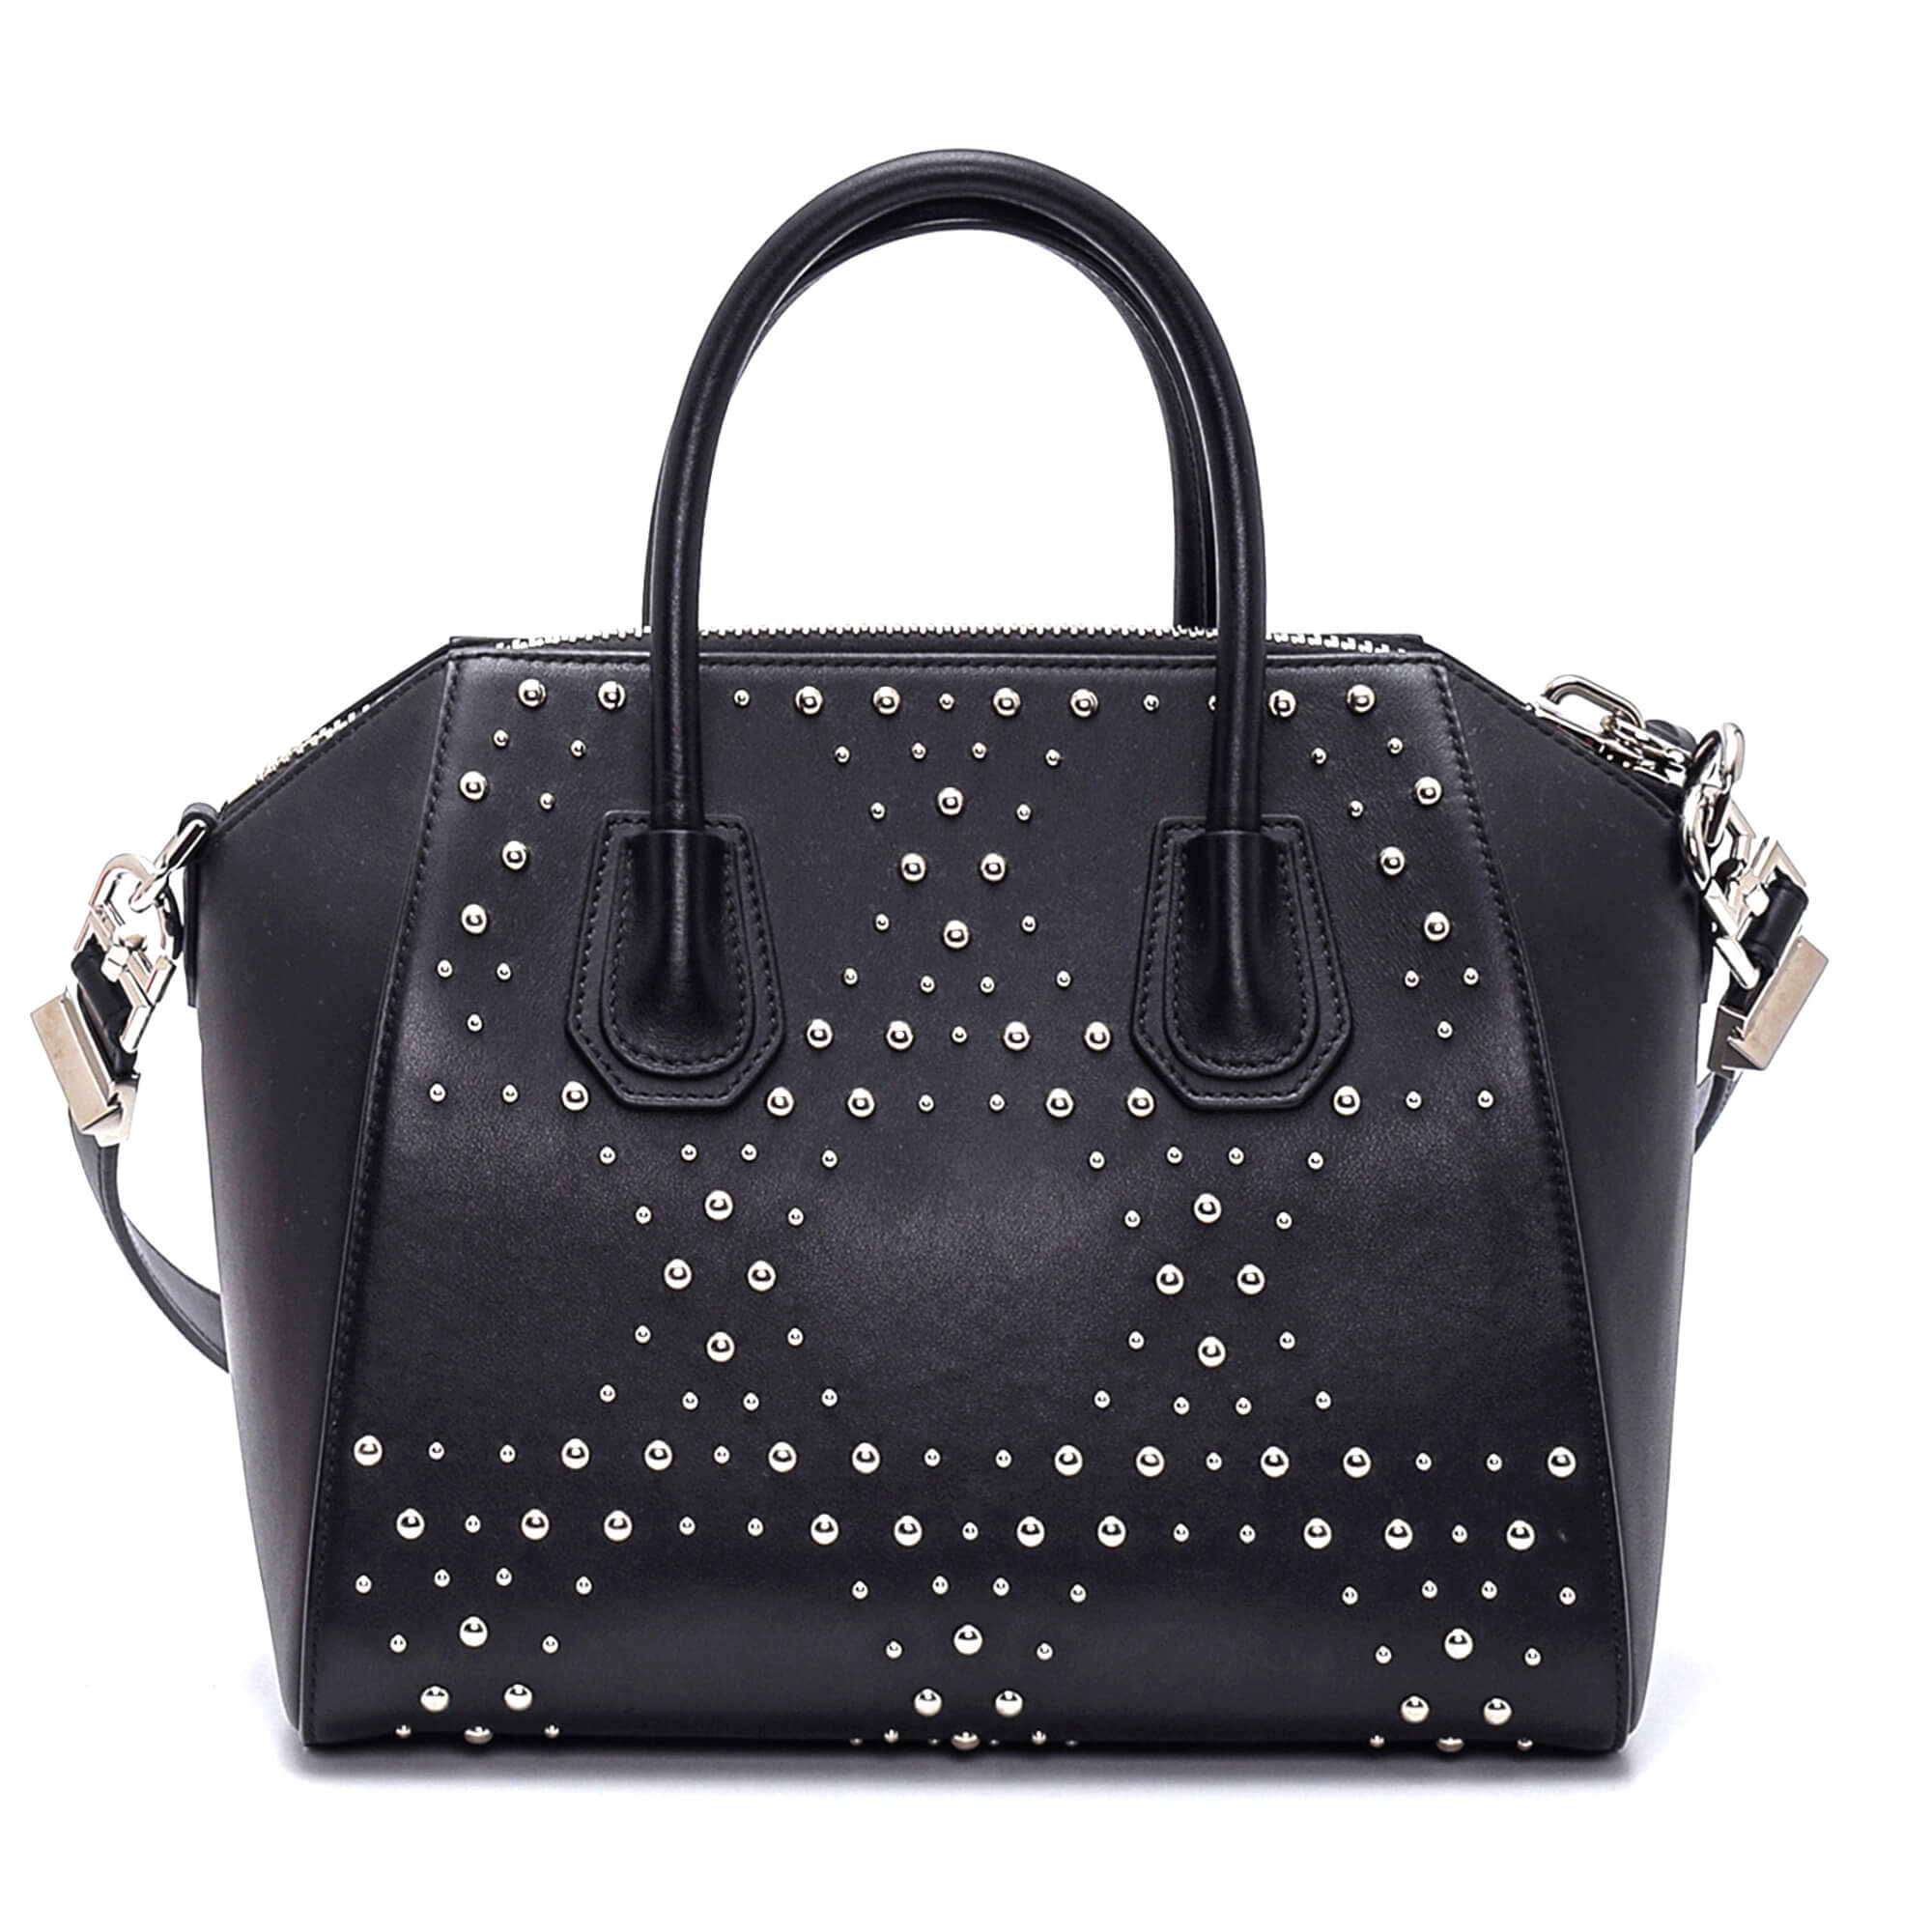 Givenchy - Black Studded Antigona Small Bag